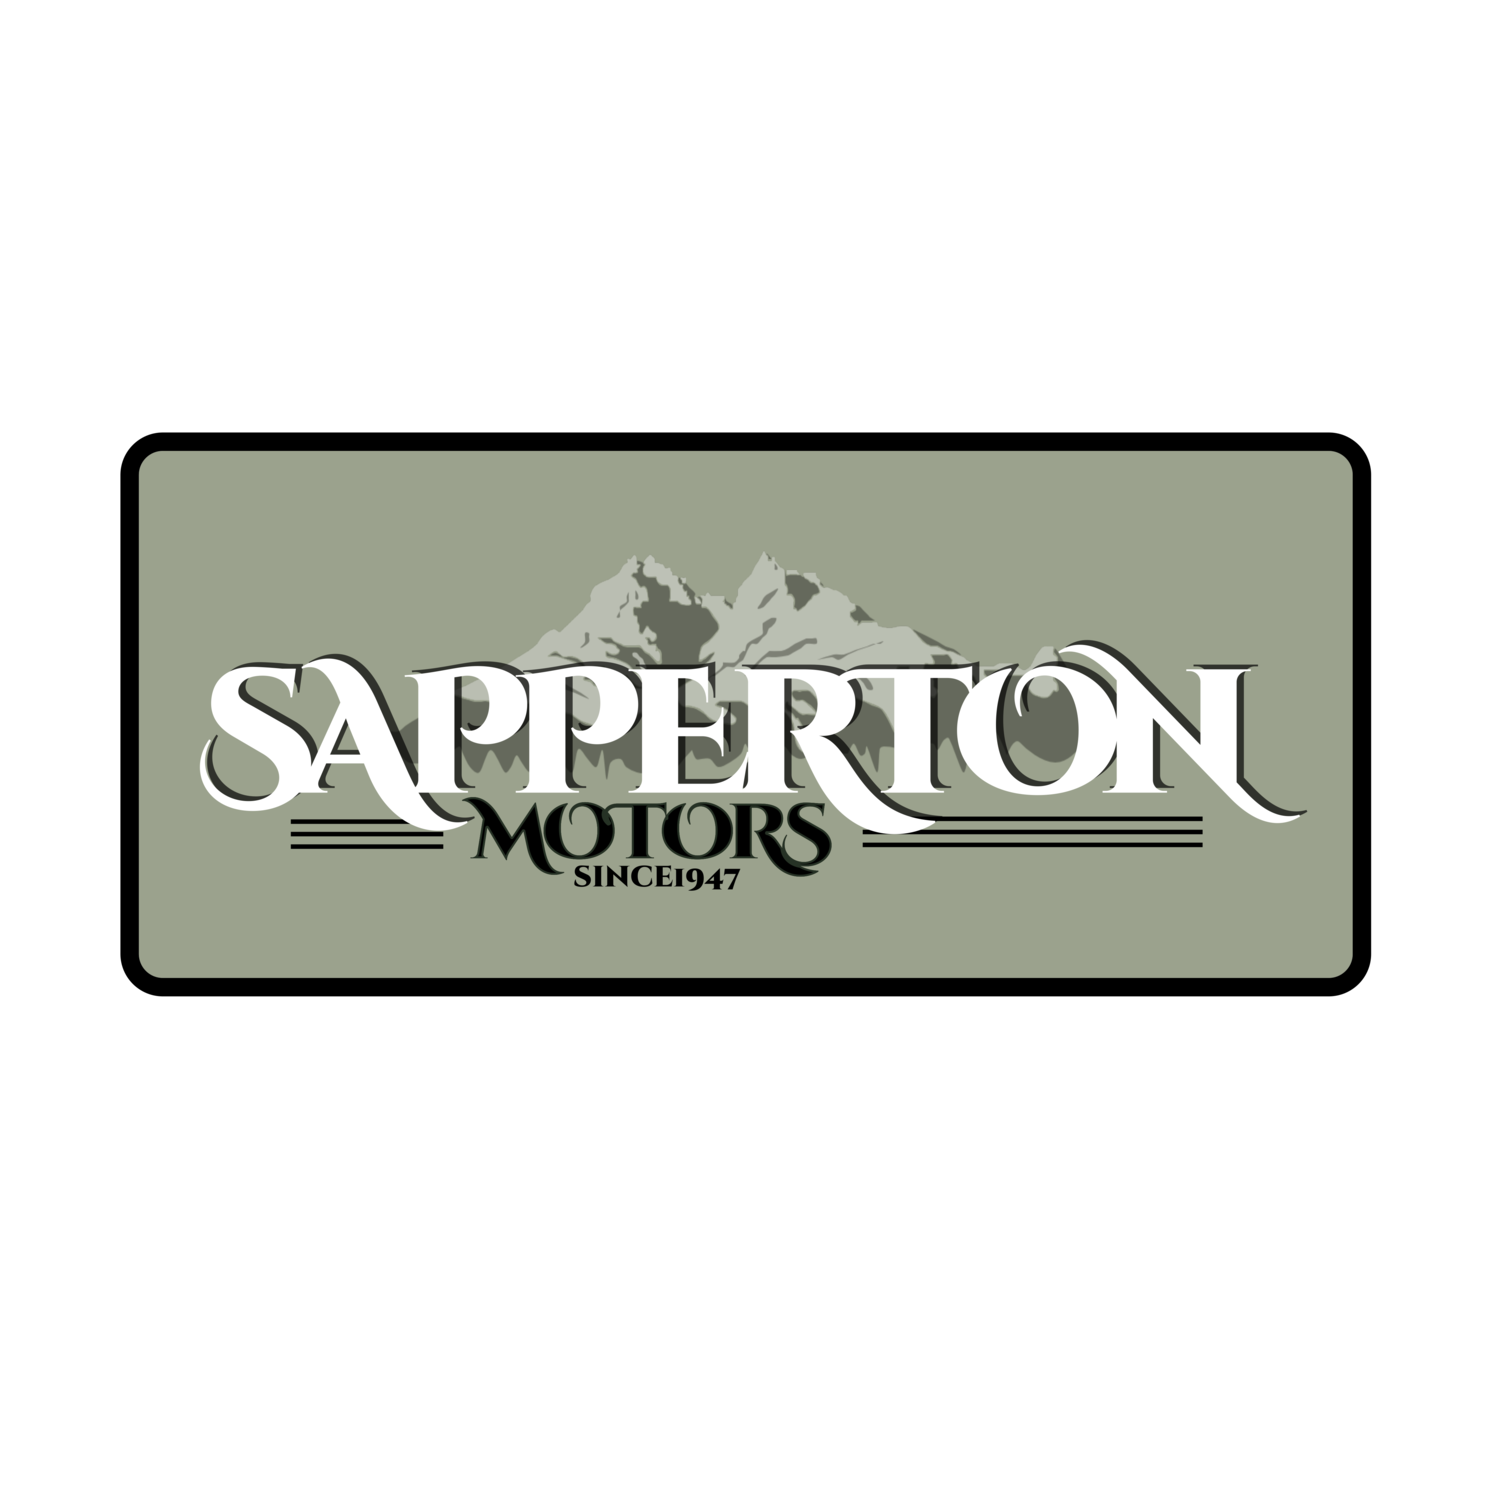 Sapperton Motors